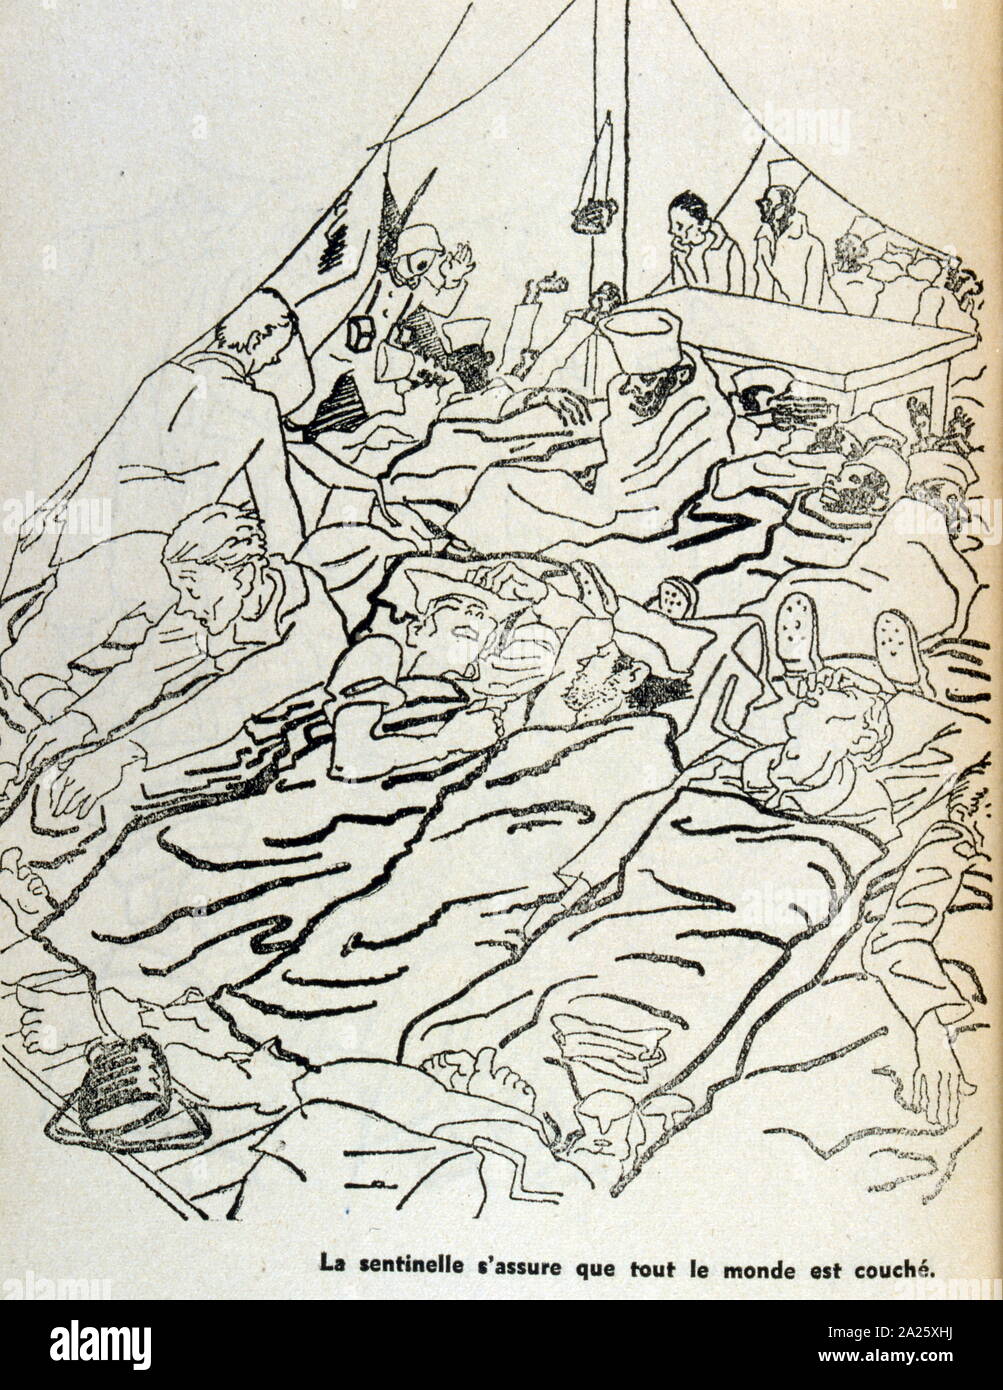 Abbildung: Französische Kriegsgefangene geweckt von einem Deutschen captor. Von Antoine de Roux 1940 gezeichnet. Truppen aus dem Senegal und in Nordafrika werden angezeigt Stockfoto